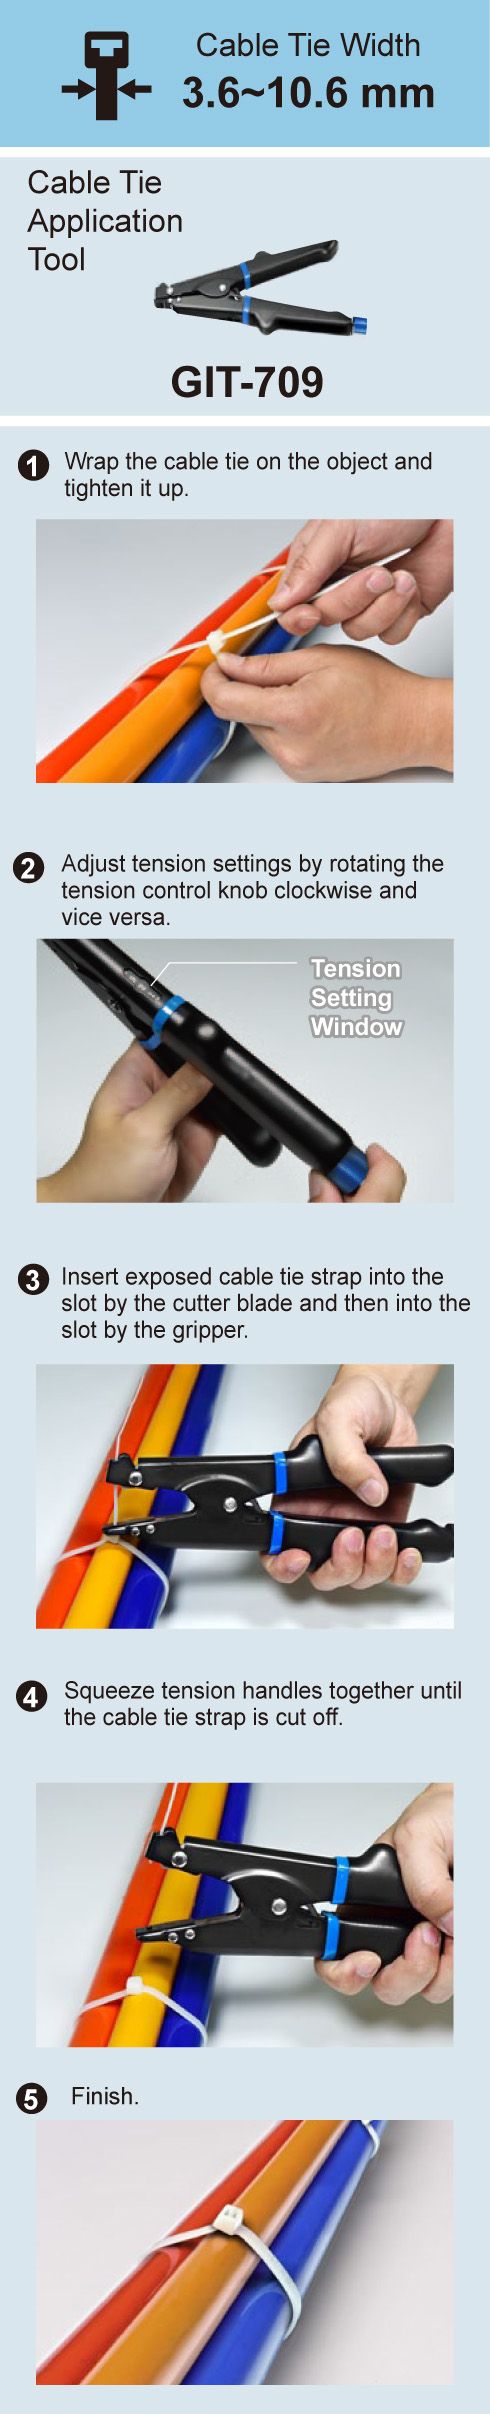 Инструкция по эксплуатации пластиковых кабельных стяжек с GIT-709